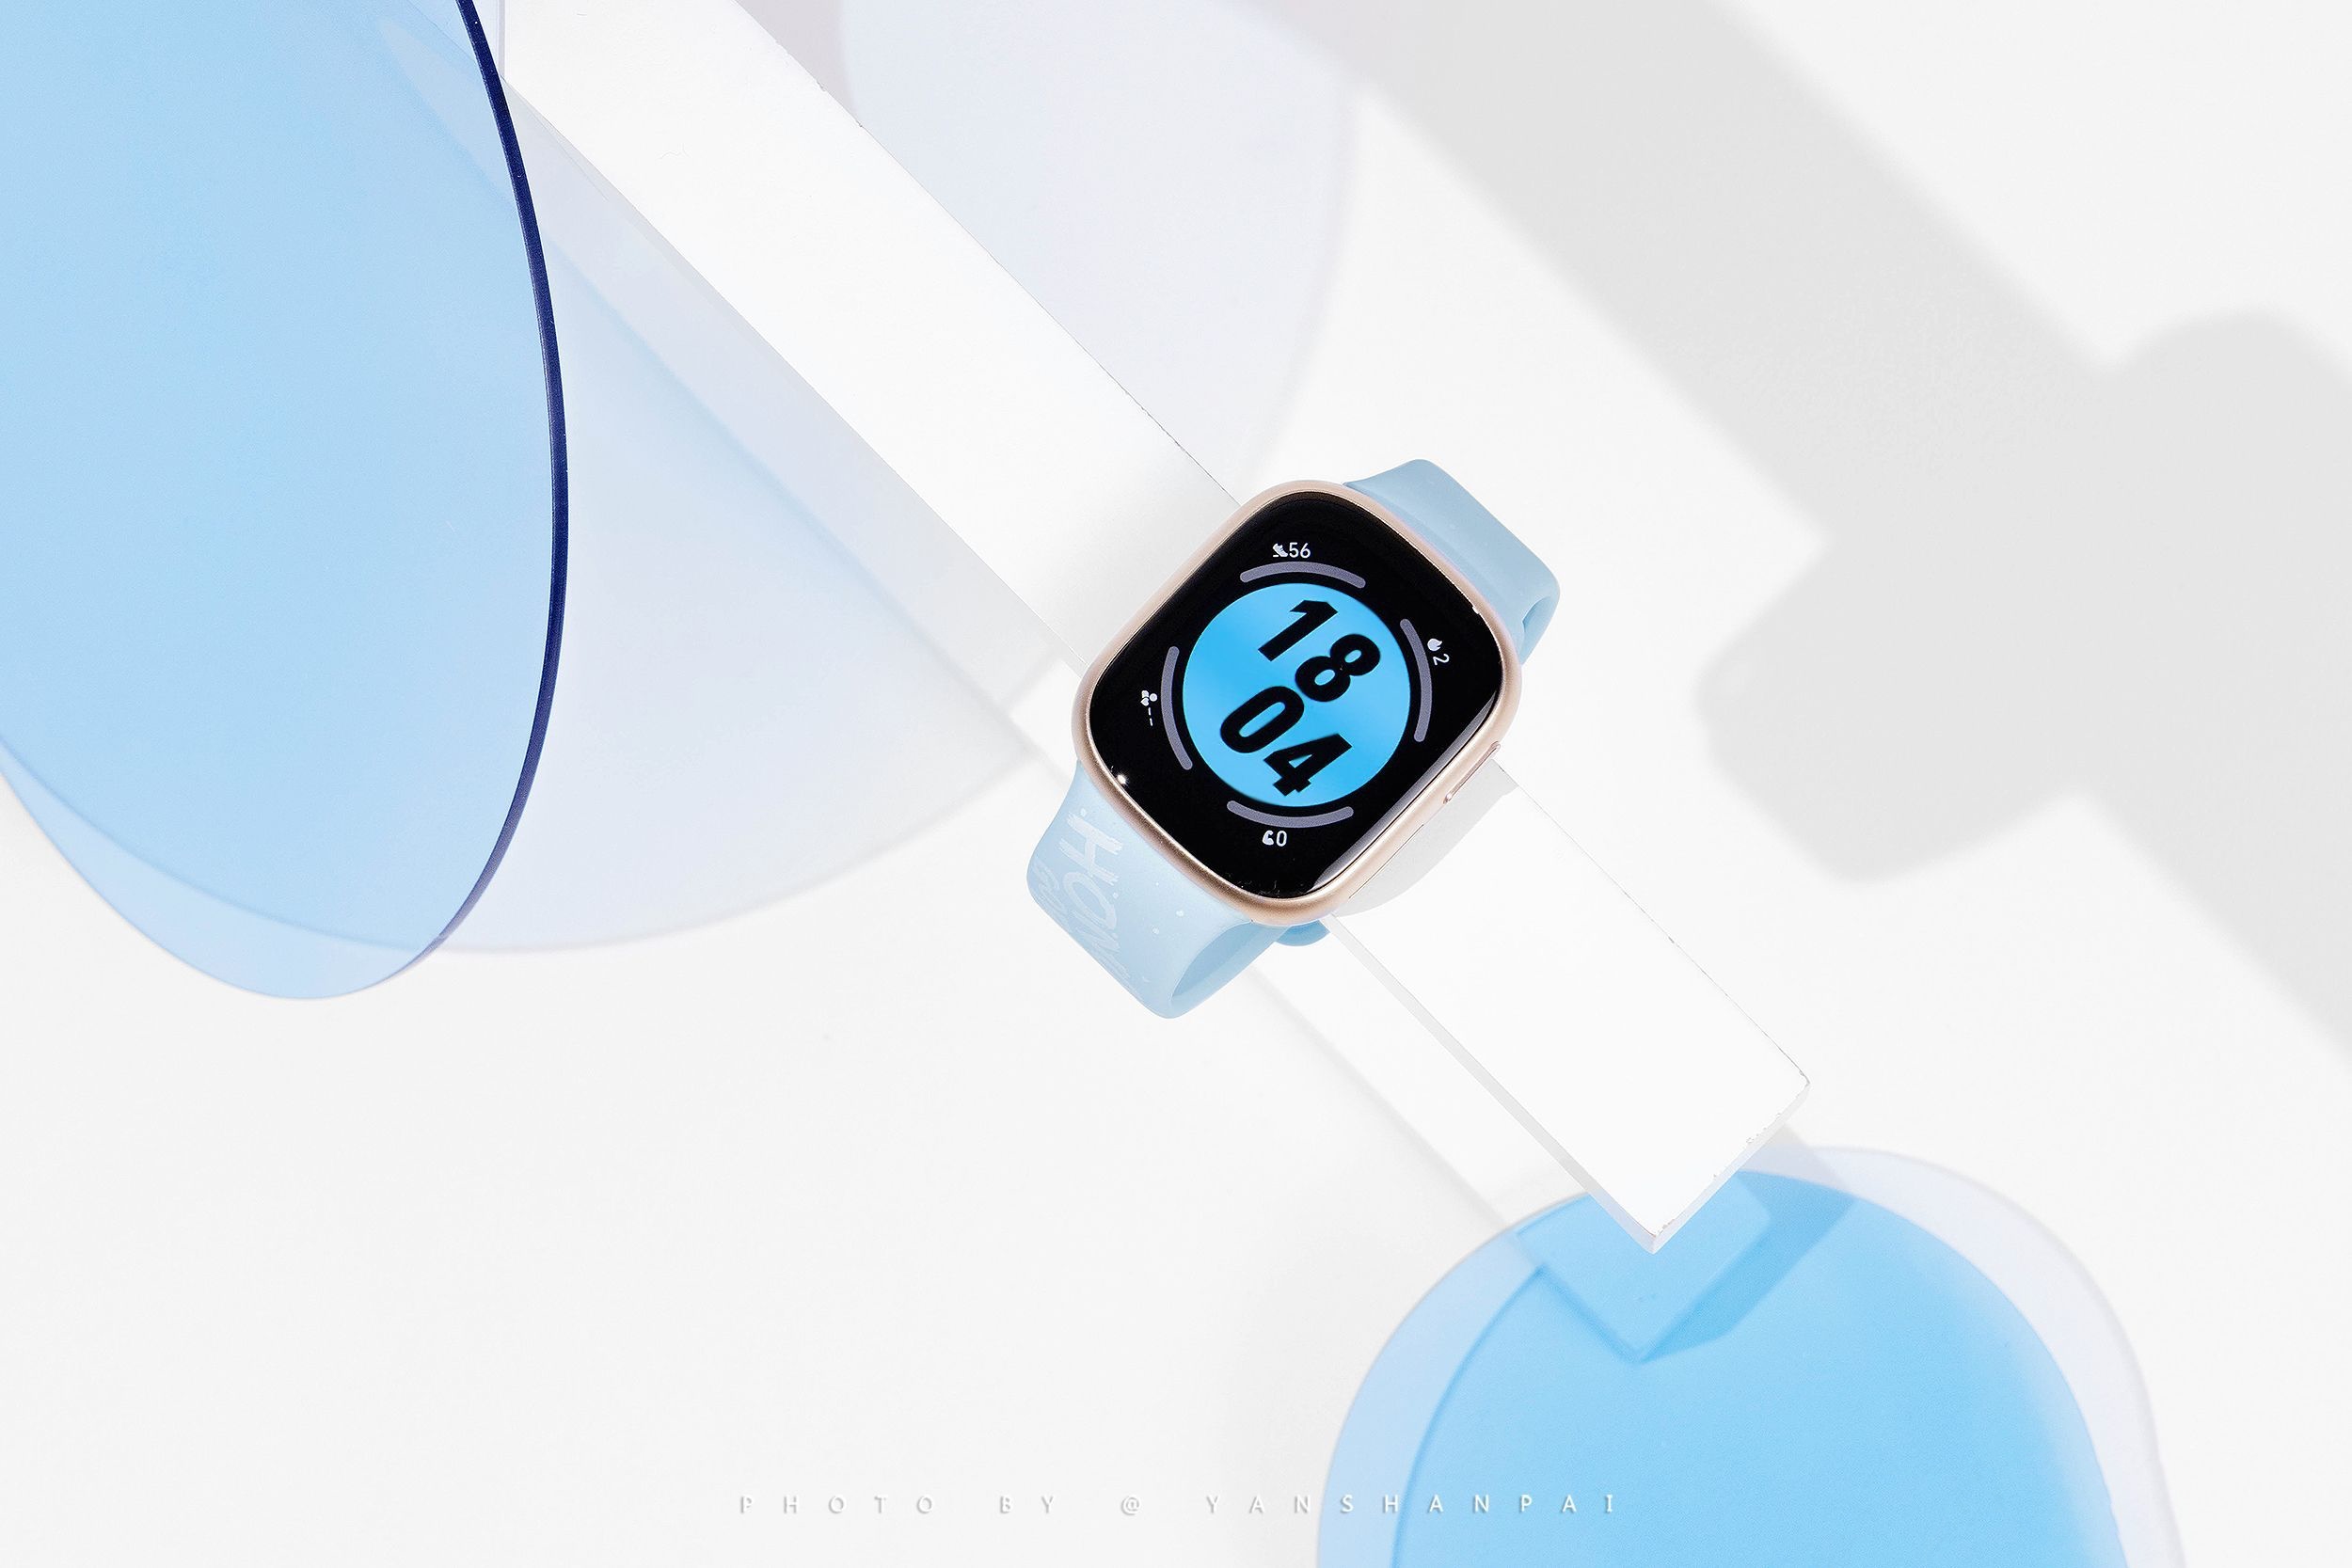 Une copie de l'Apple Watch : des photos en direct de la Honor Watch 4 ont fait surface en ligne